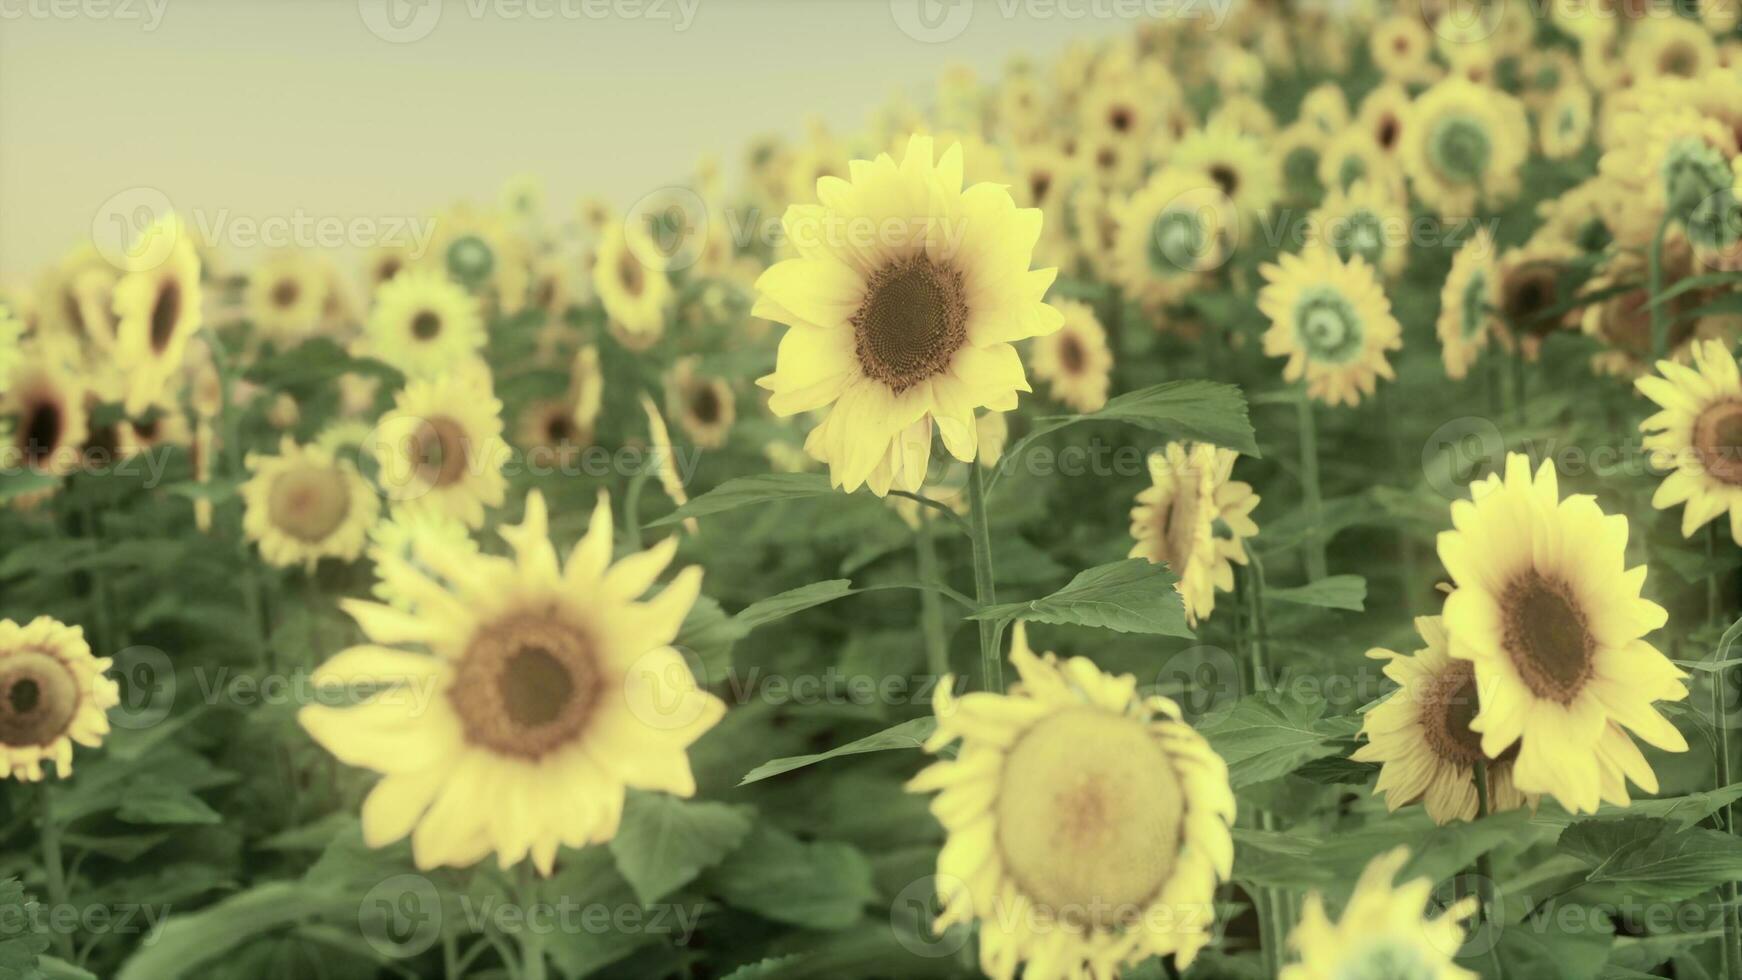 herrliche szene von leuchtend gelben sonnenblumen am abend foto